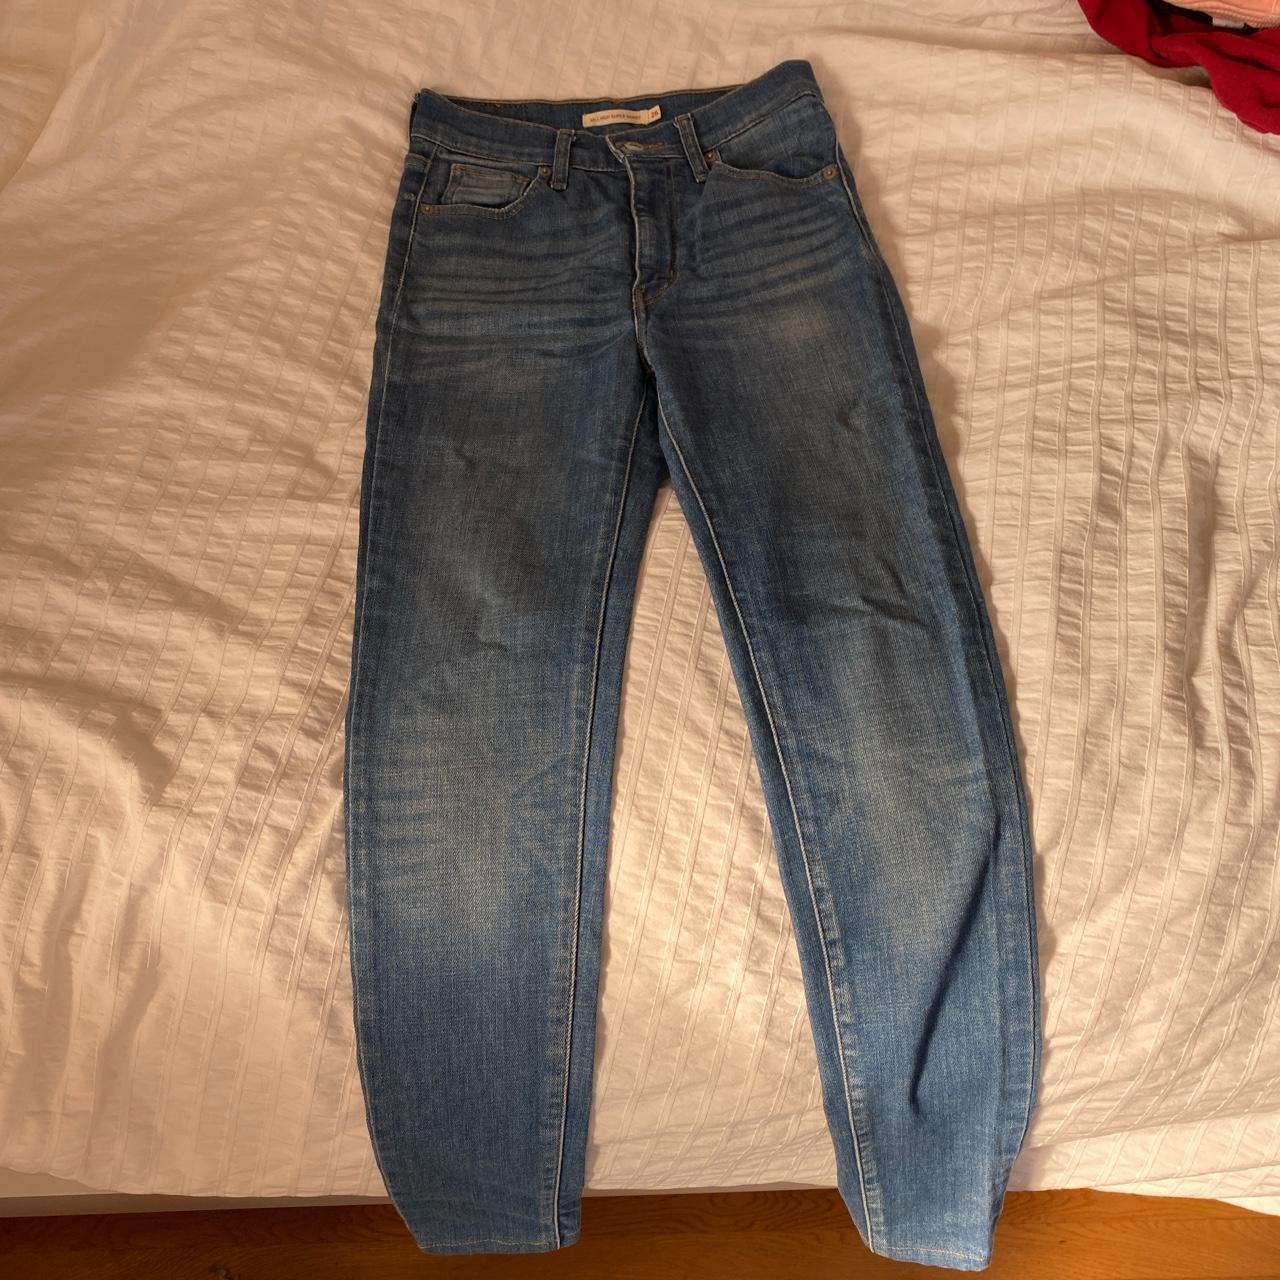 Mile High Super Skinny Levi Jeans for sale. Barely... - Depop